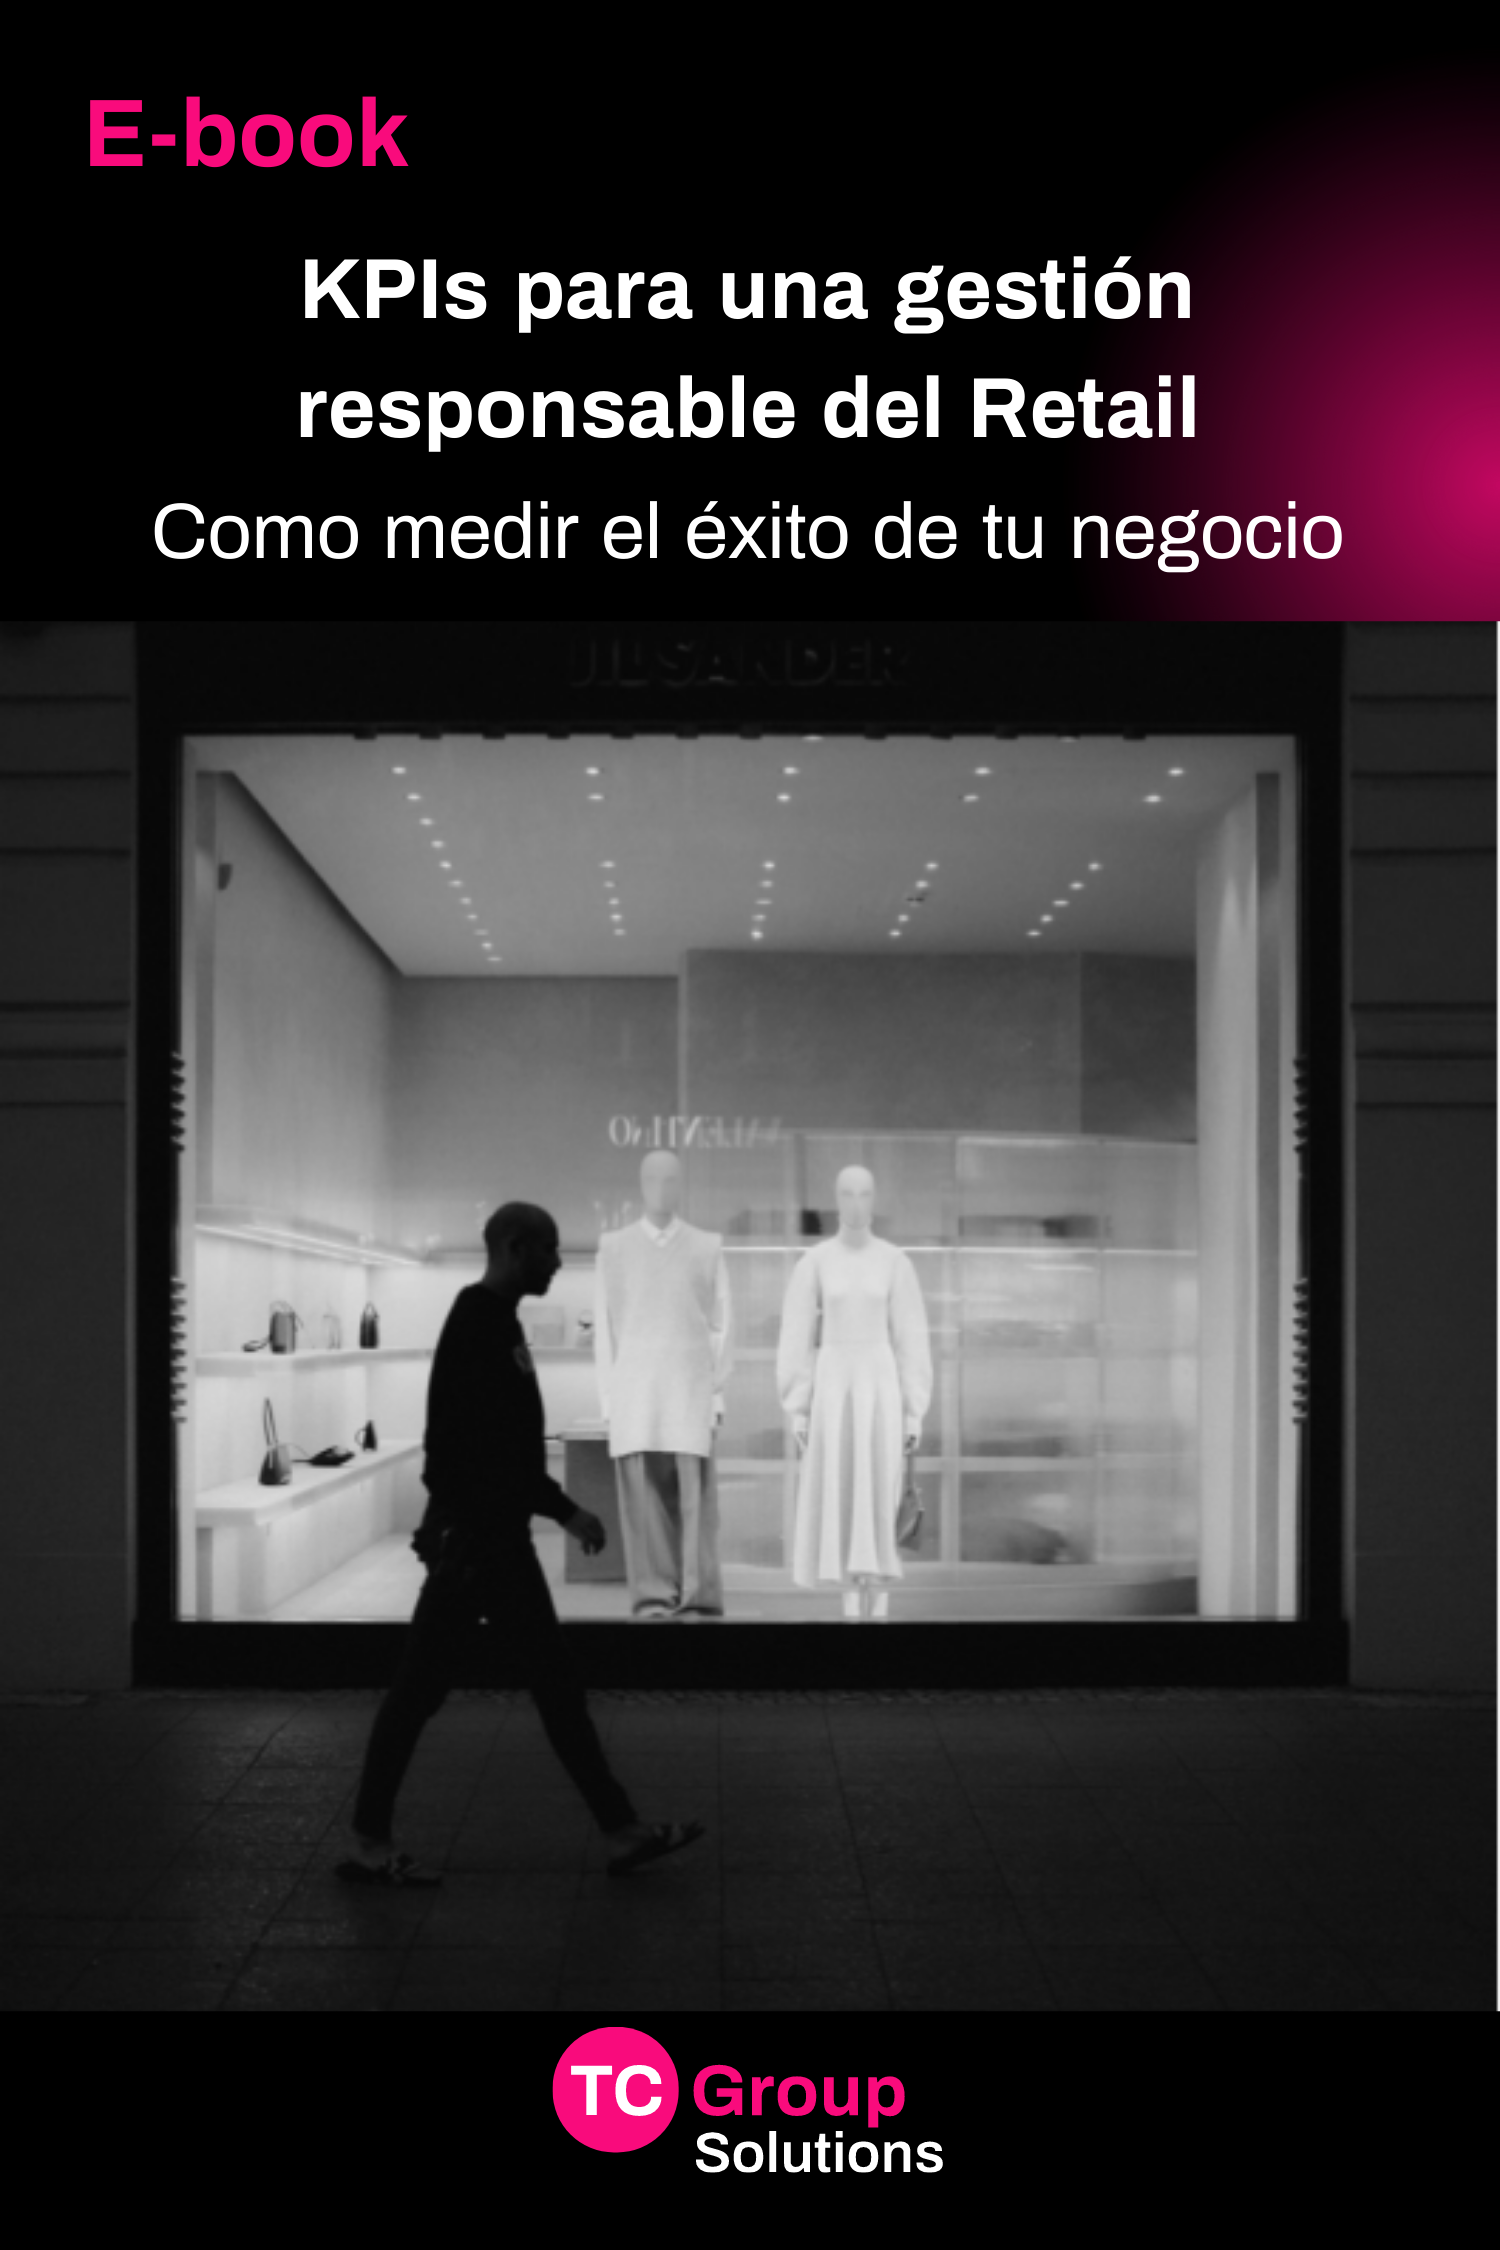 Ebook: KPIs para una gestión responsable del Retail